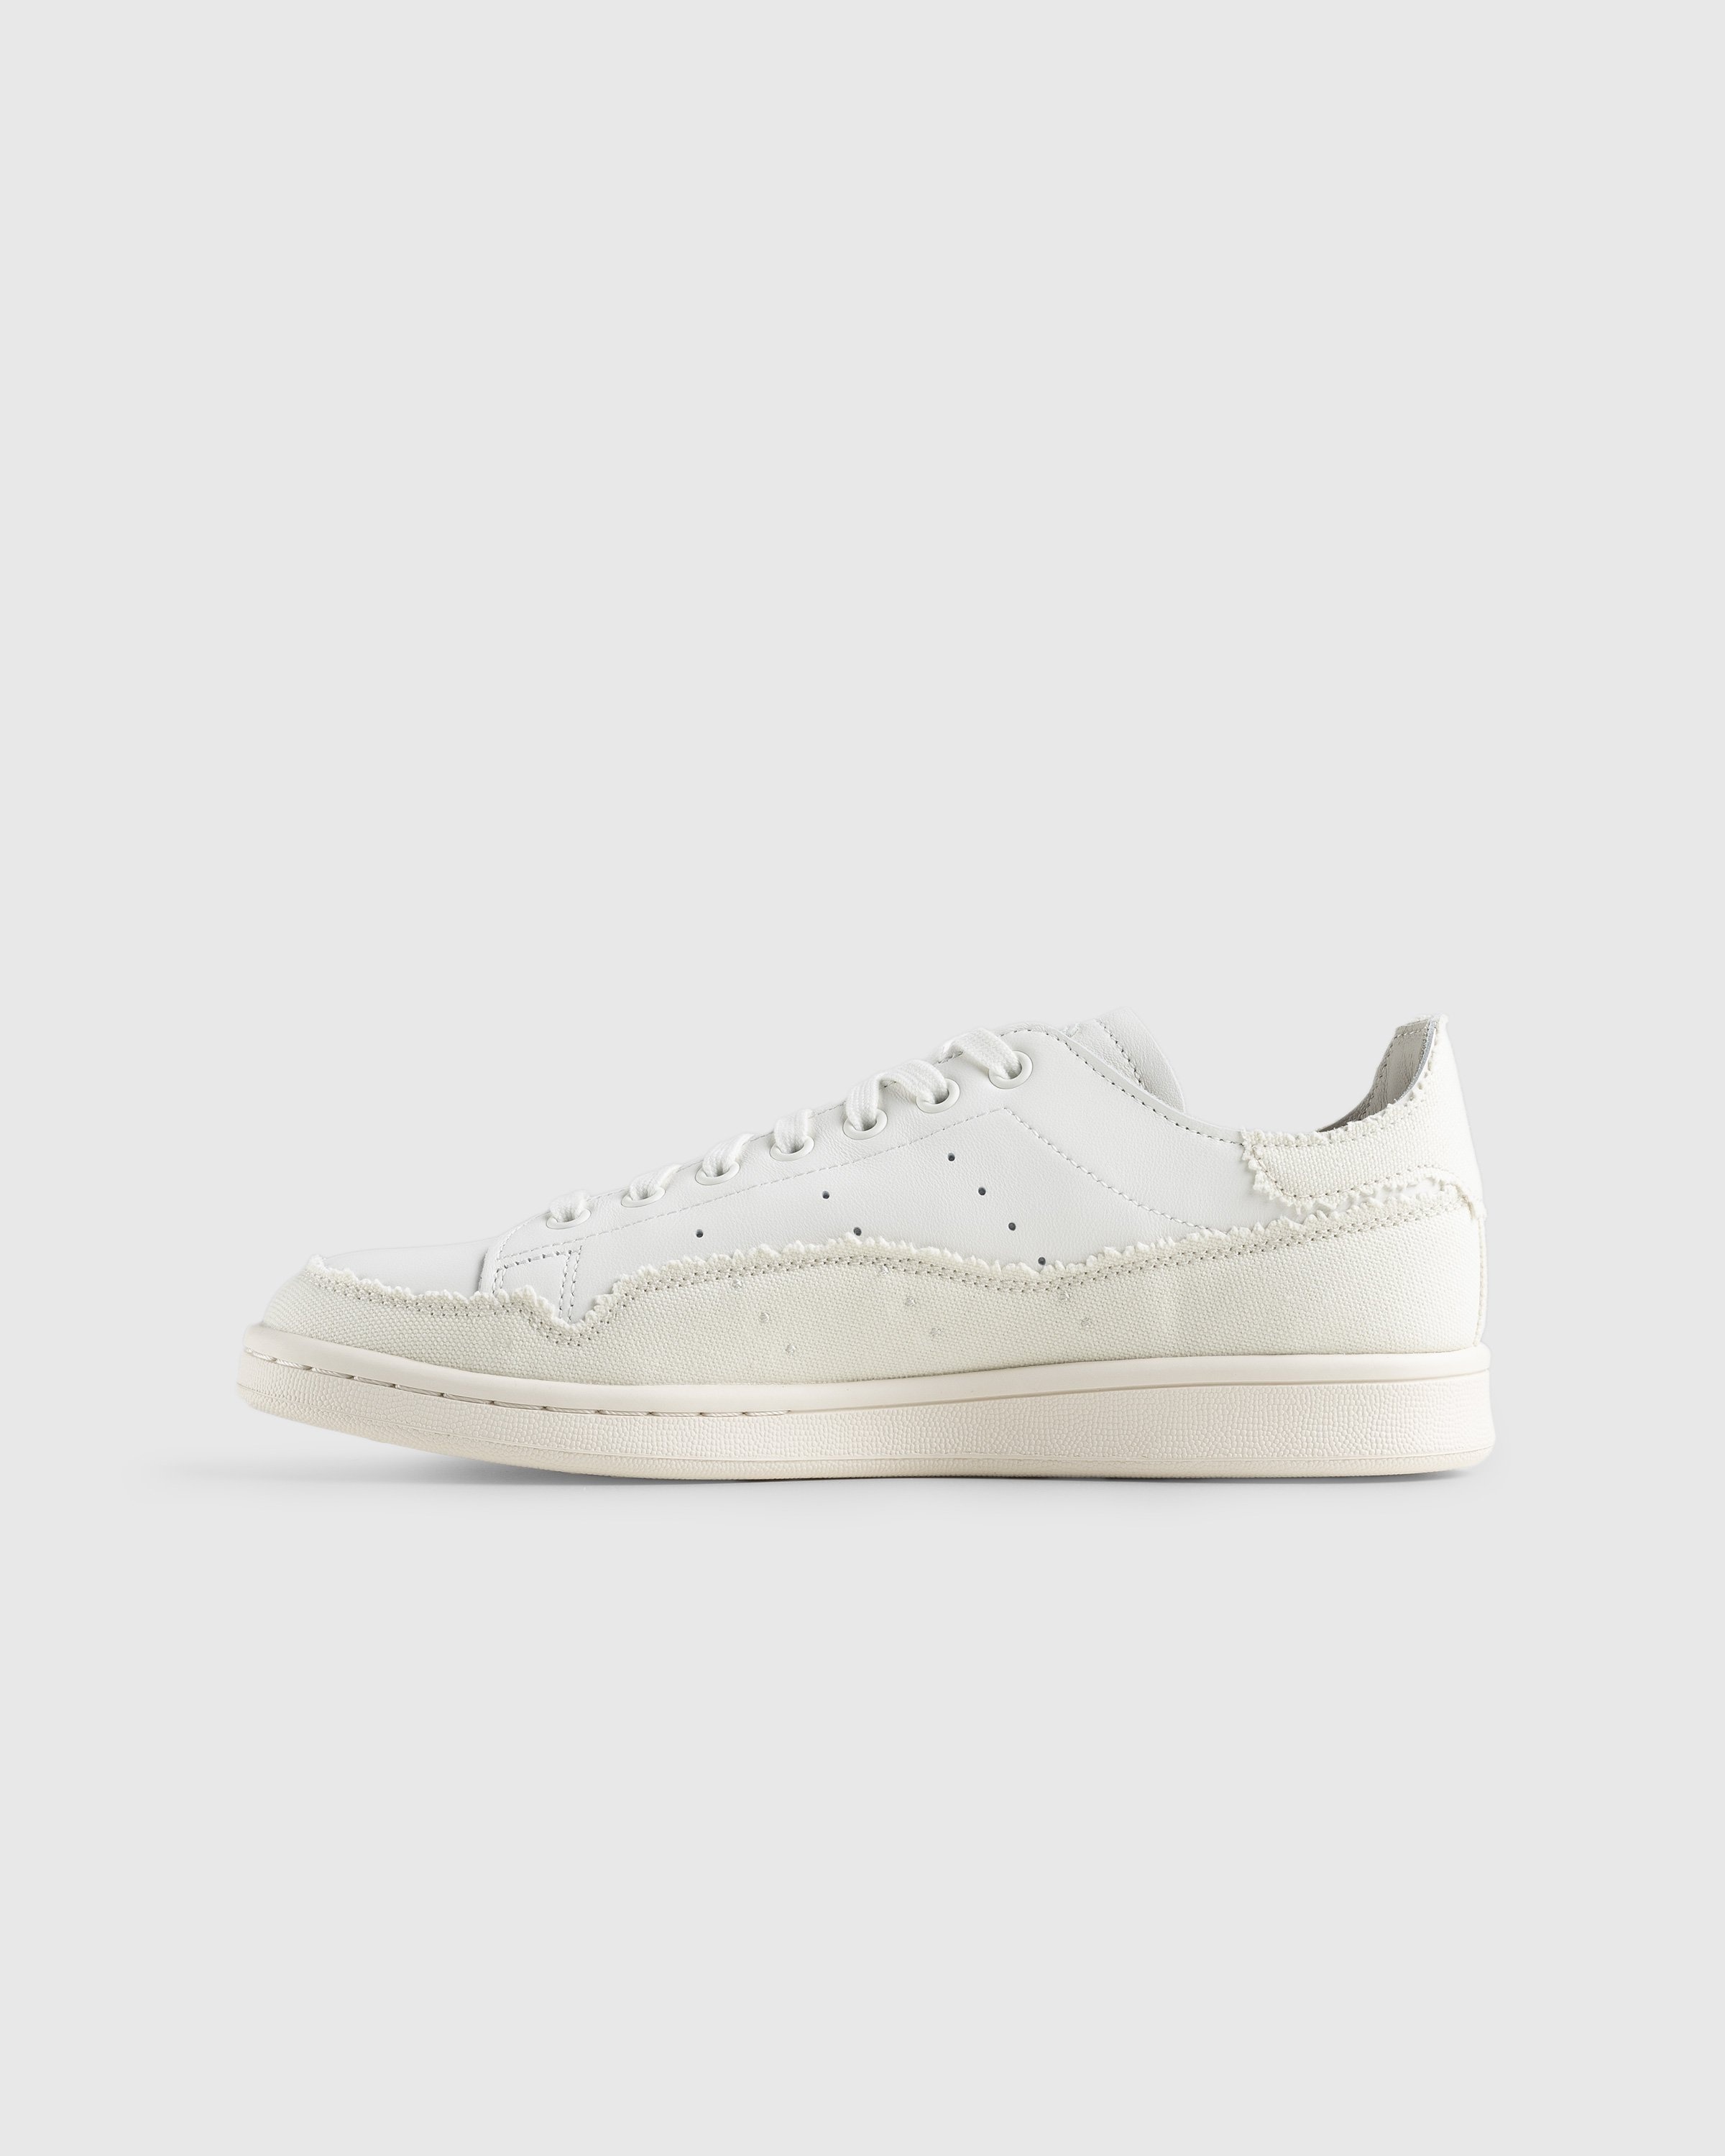 Adidas – Stan Smith Recon White - Sneakers - White - Image 2